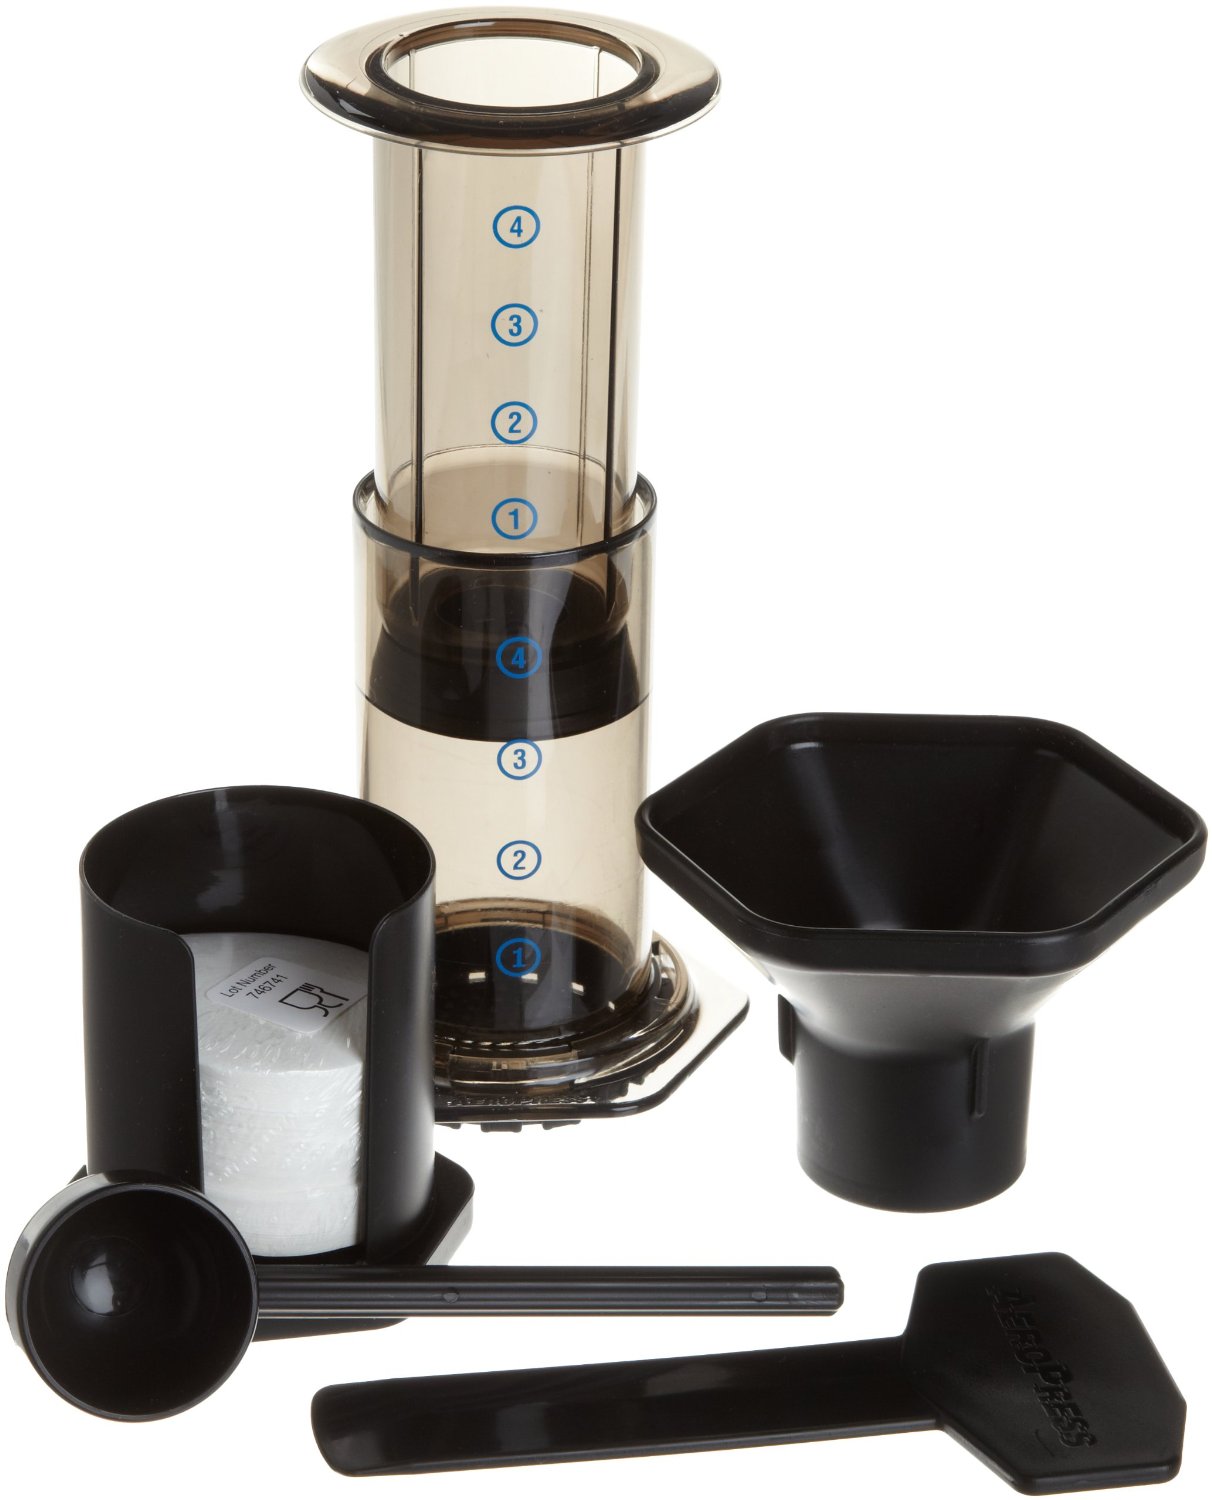 Review of Aerobie AeroPress Coffee and Espresso Maker